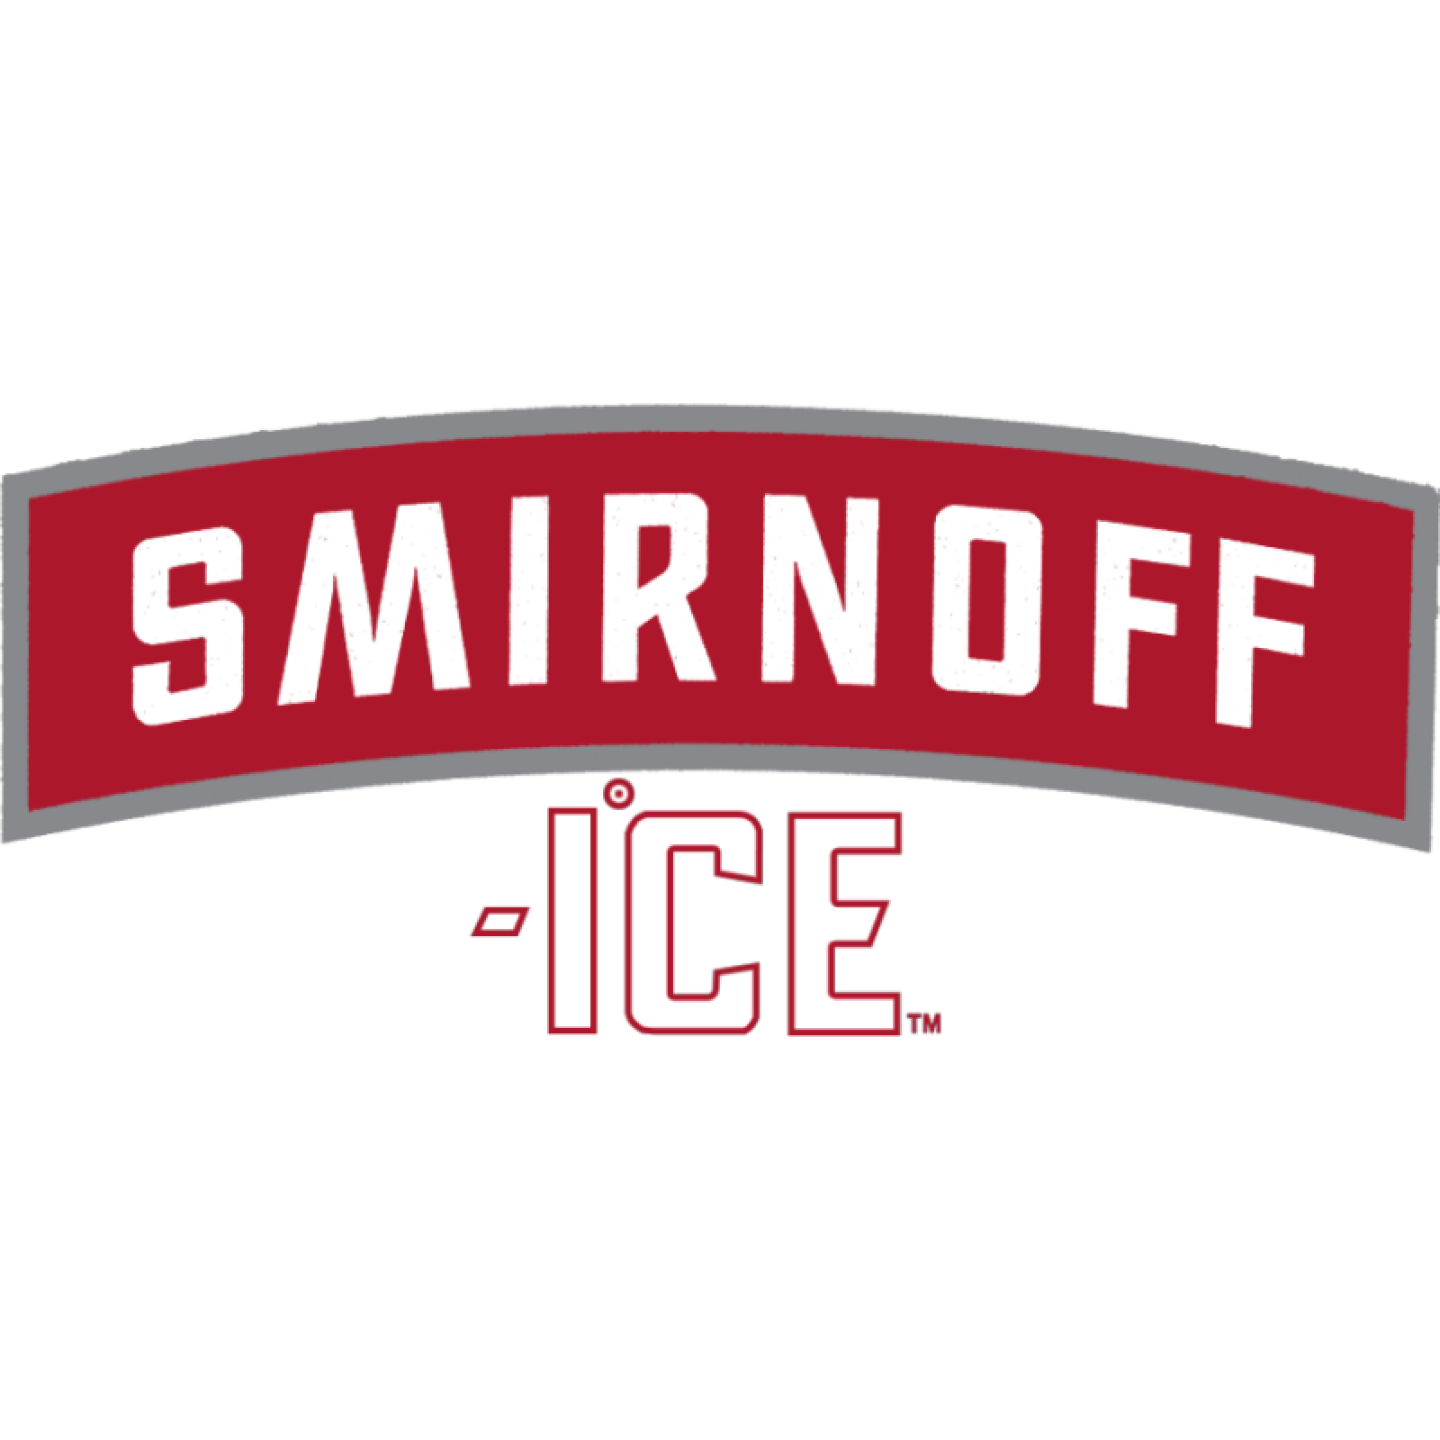 Smirnoff Ice Image 1